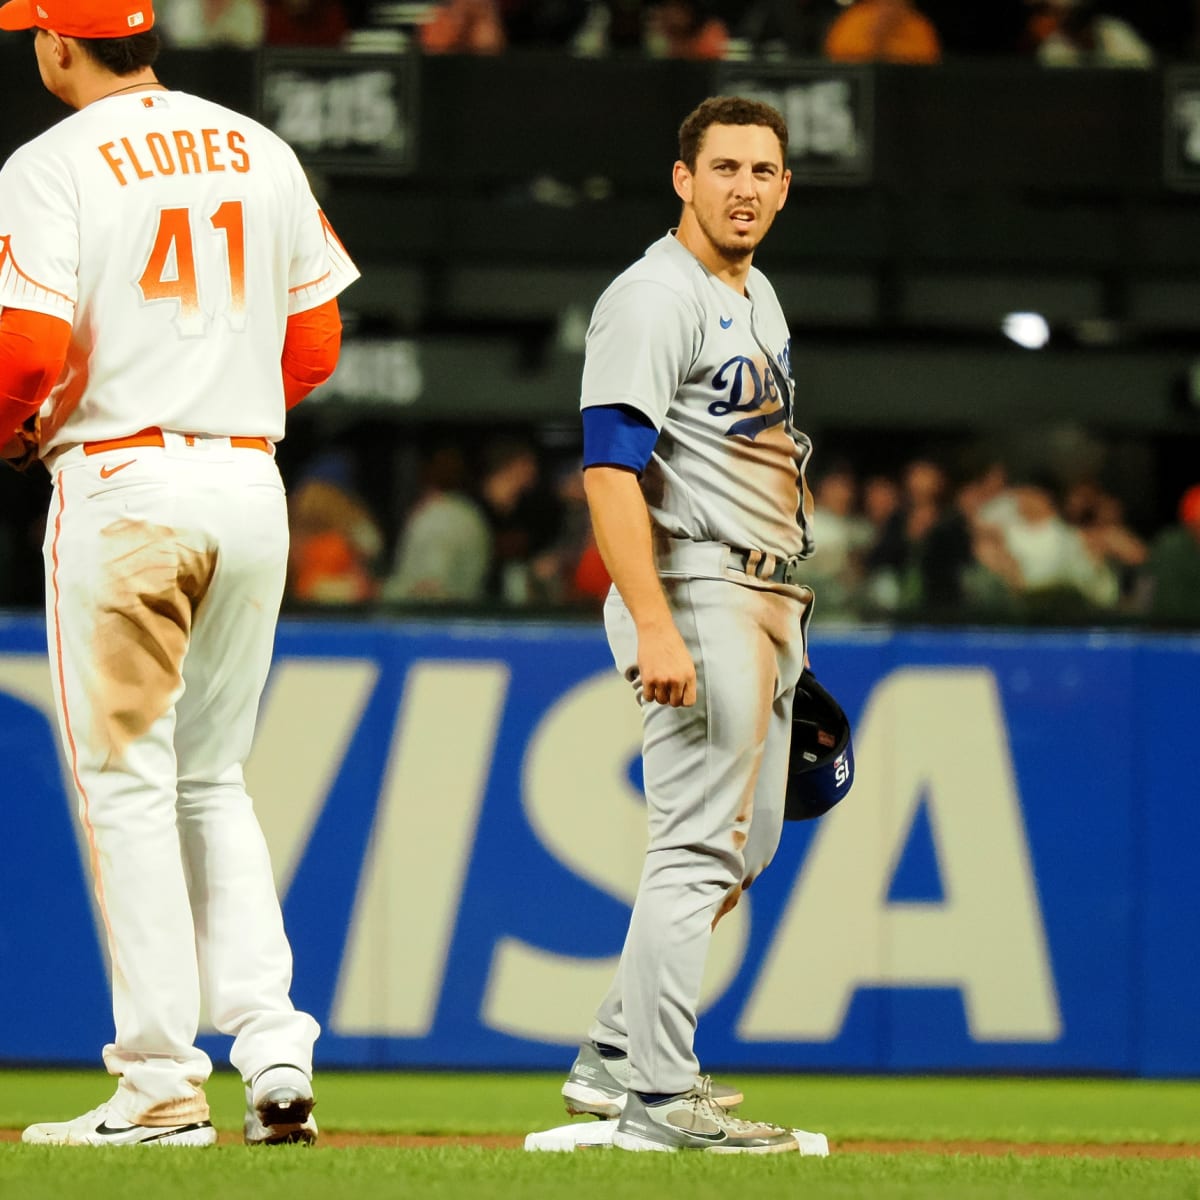 Dodgers' catcher Austin Barnes' Riverside roots run deep – Daily News